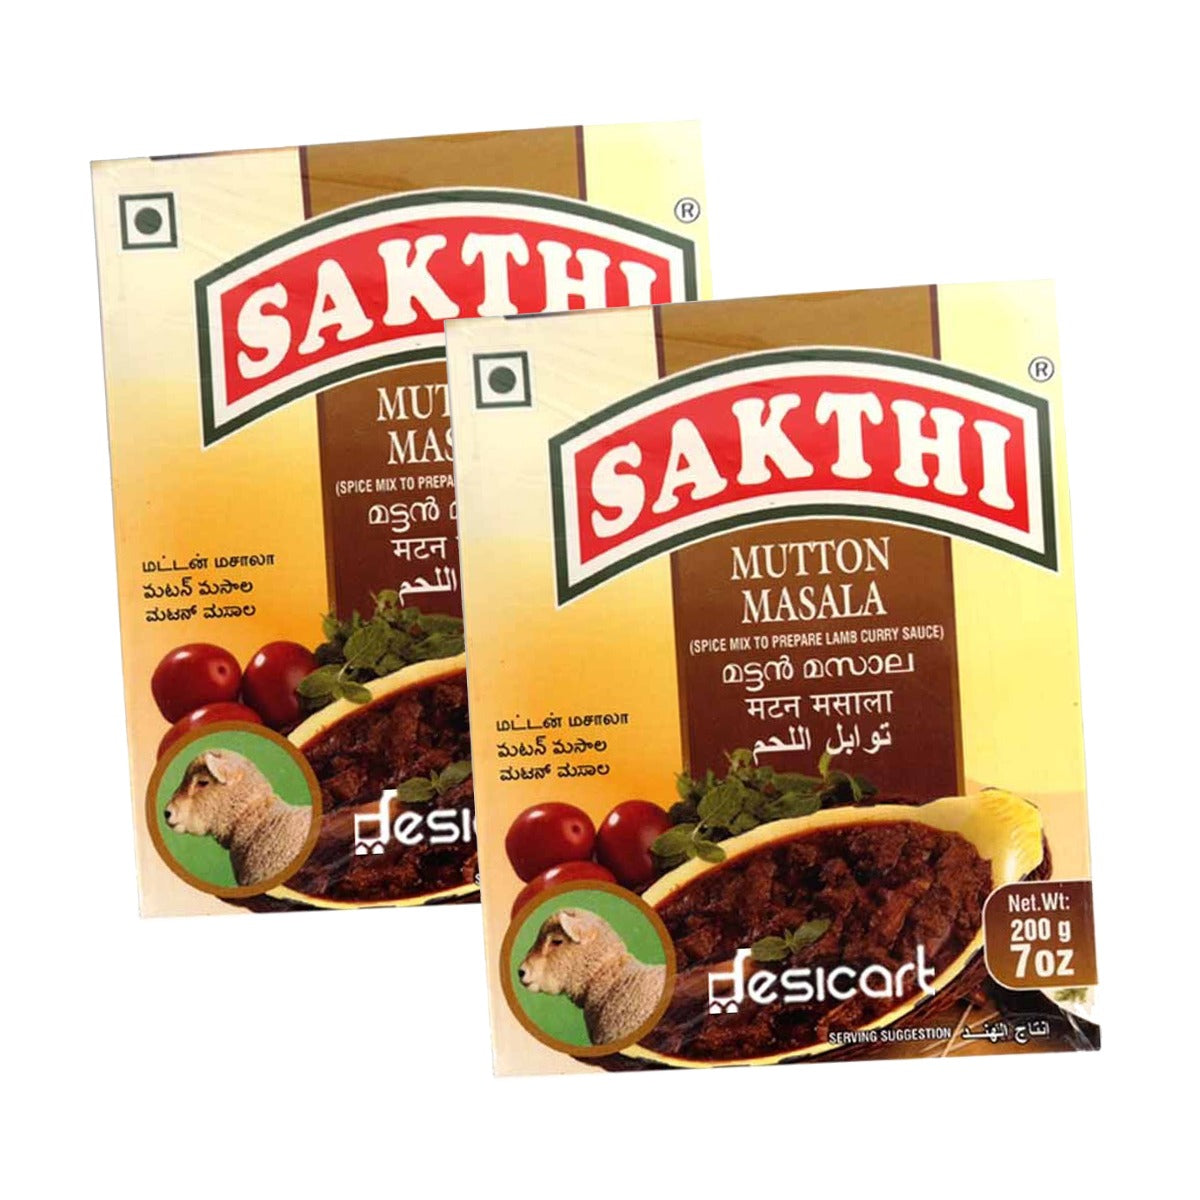 Sakthi Mutton Masala 200g Pack of 2